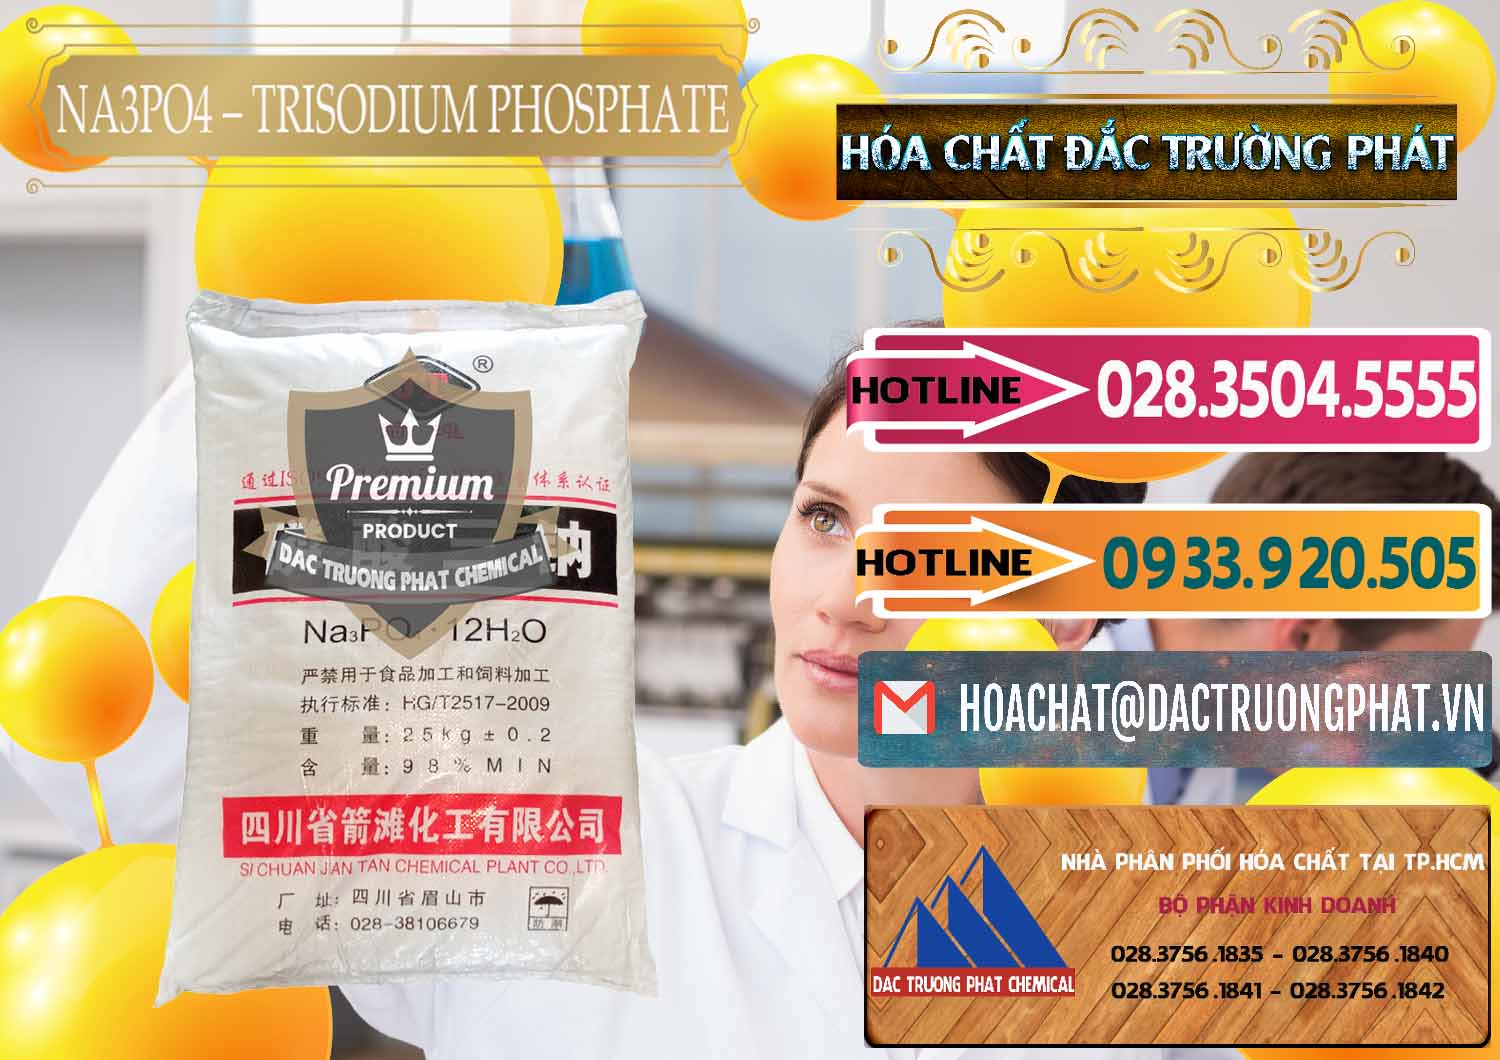 Cty chuyên bán và cung ứng Na3PO4 – Trisodium Phosphate Trung Quốc China JT - 0102 - Nhà phân phối và cung ứng hóa chất tại TP.HCM - dactruongphat.vn